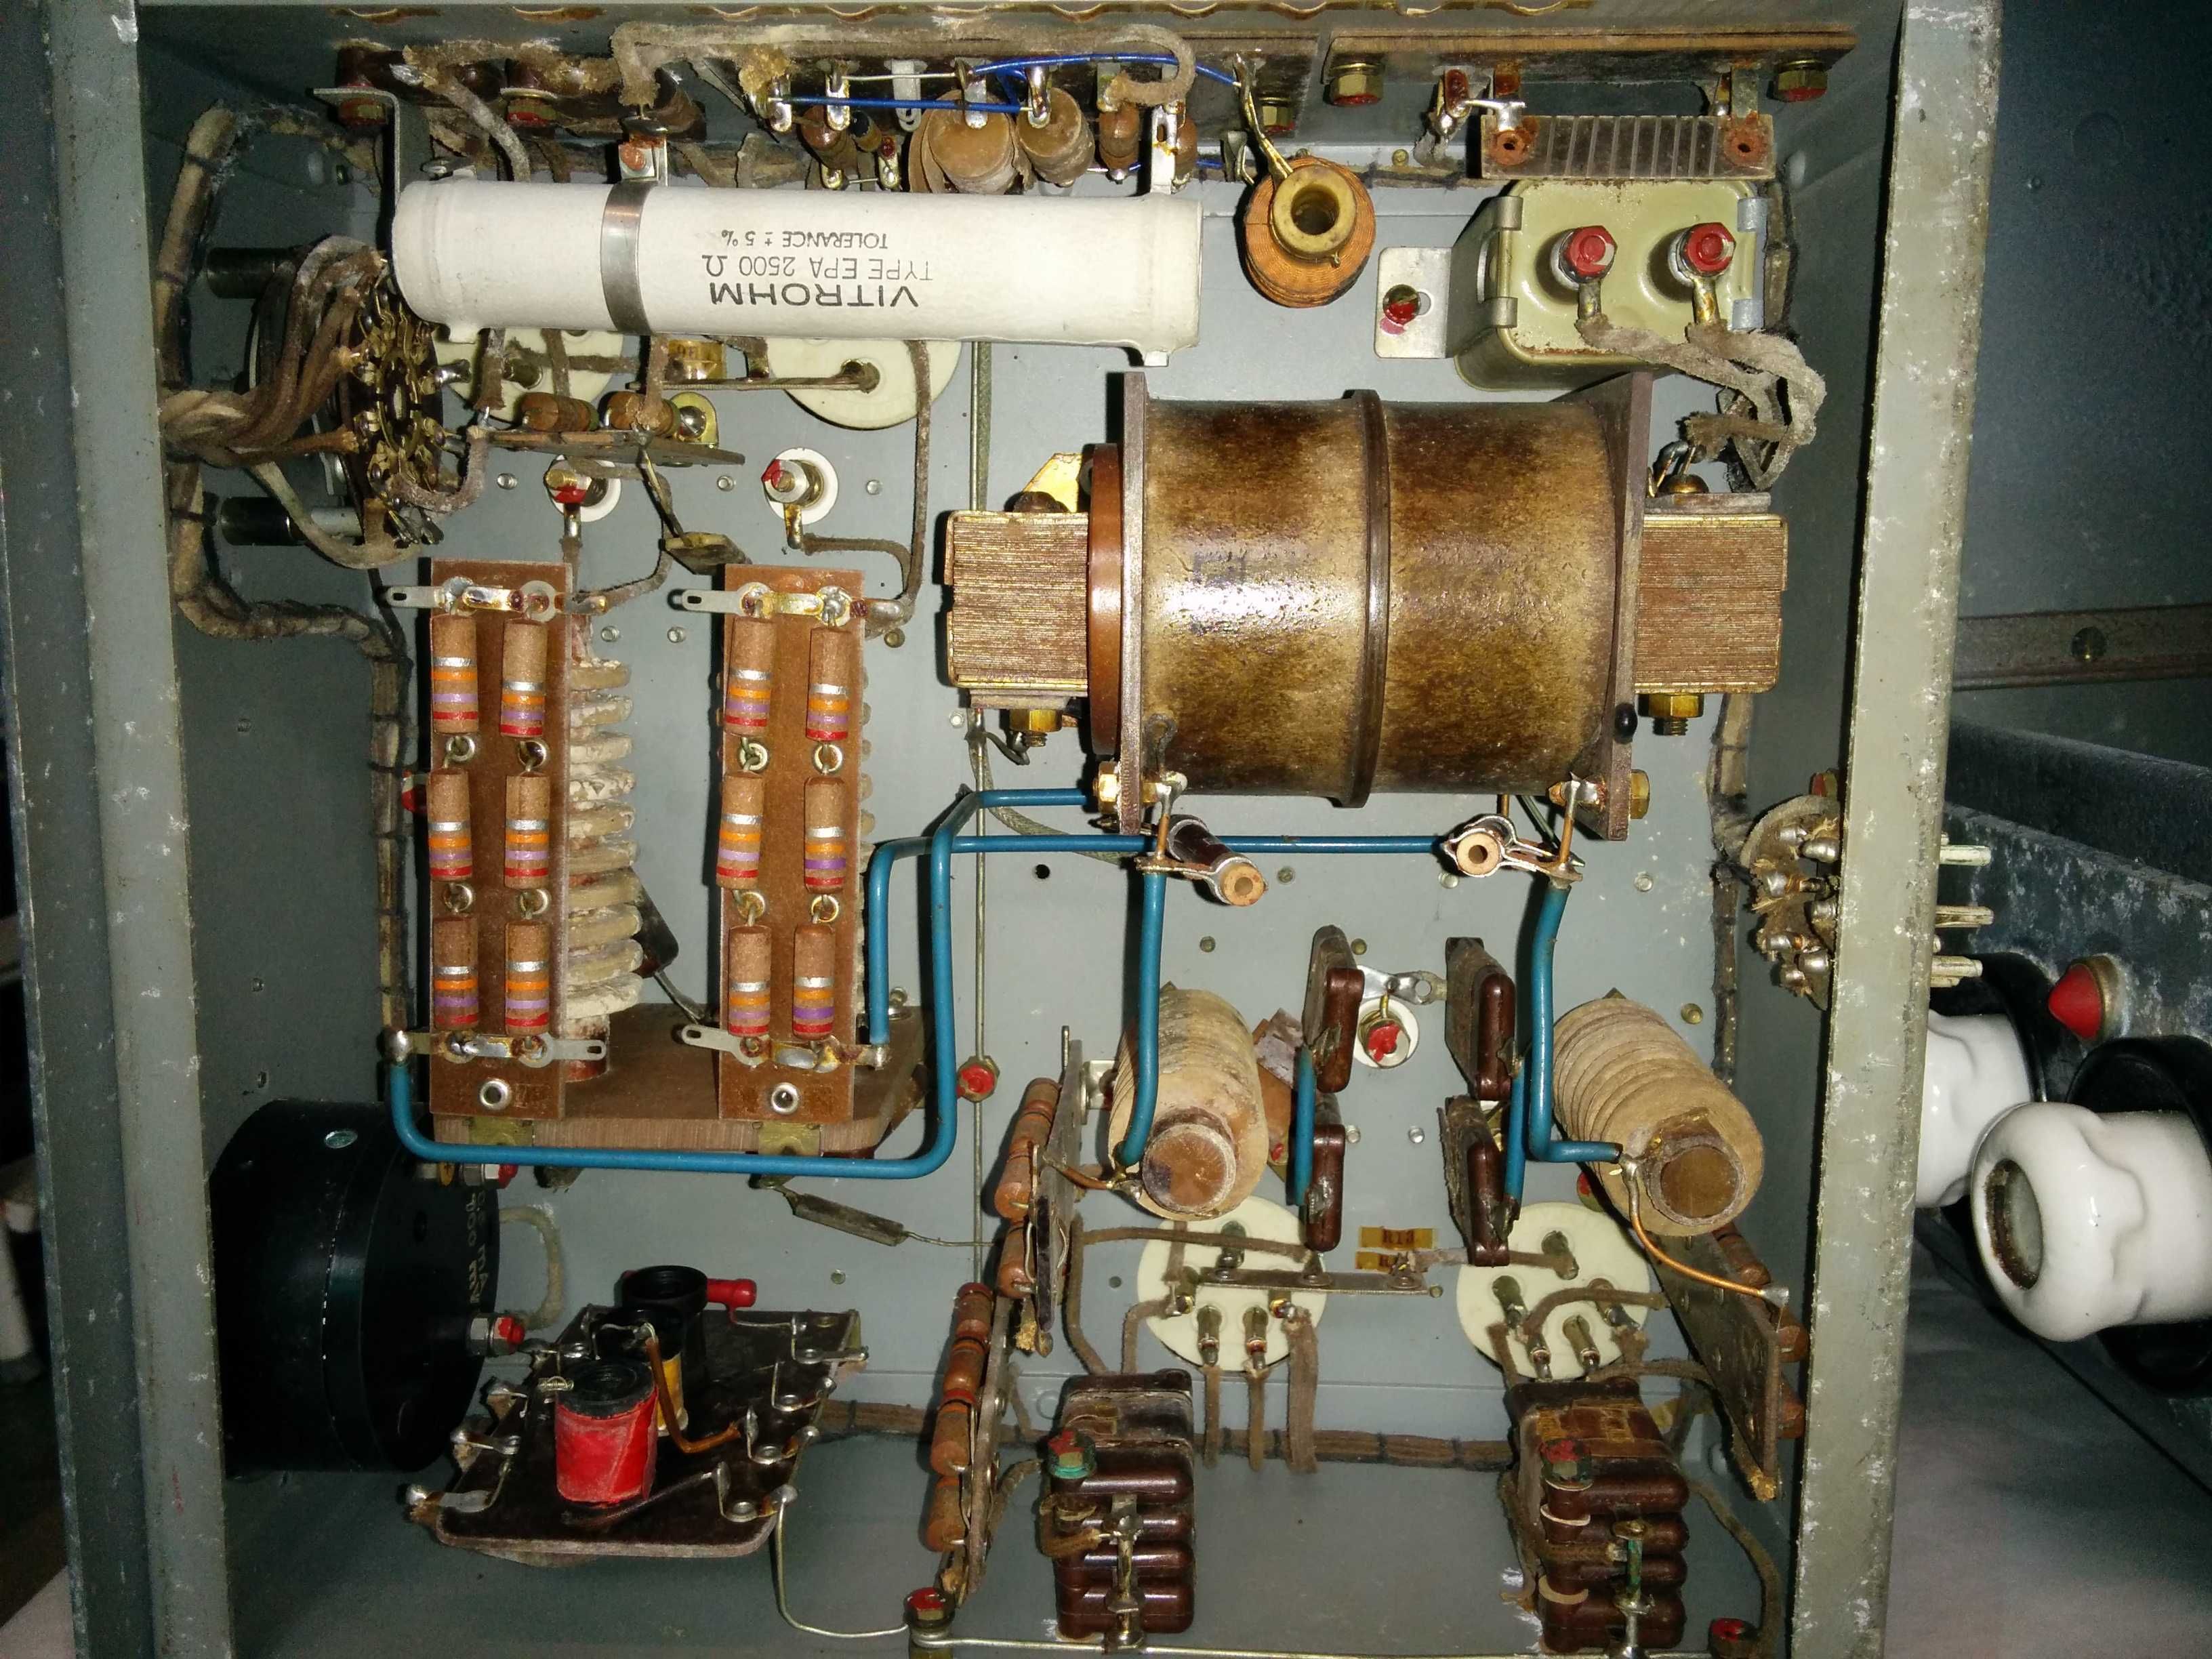 Transmissor Elektromekano S 106 a válvulas, náutico.Radioamador.